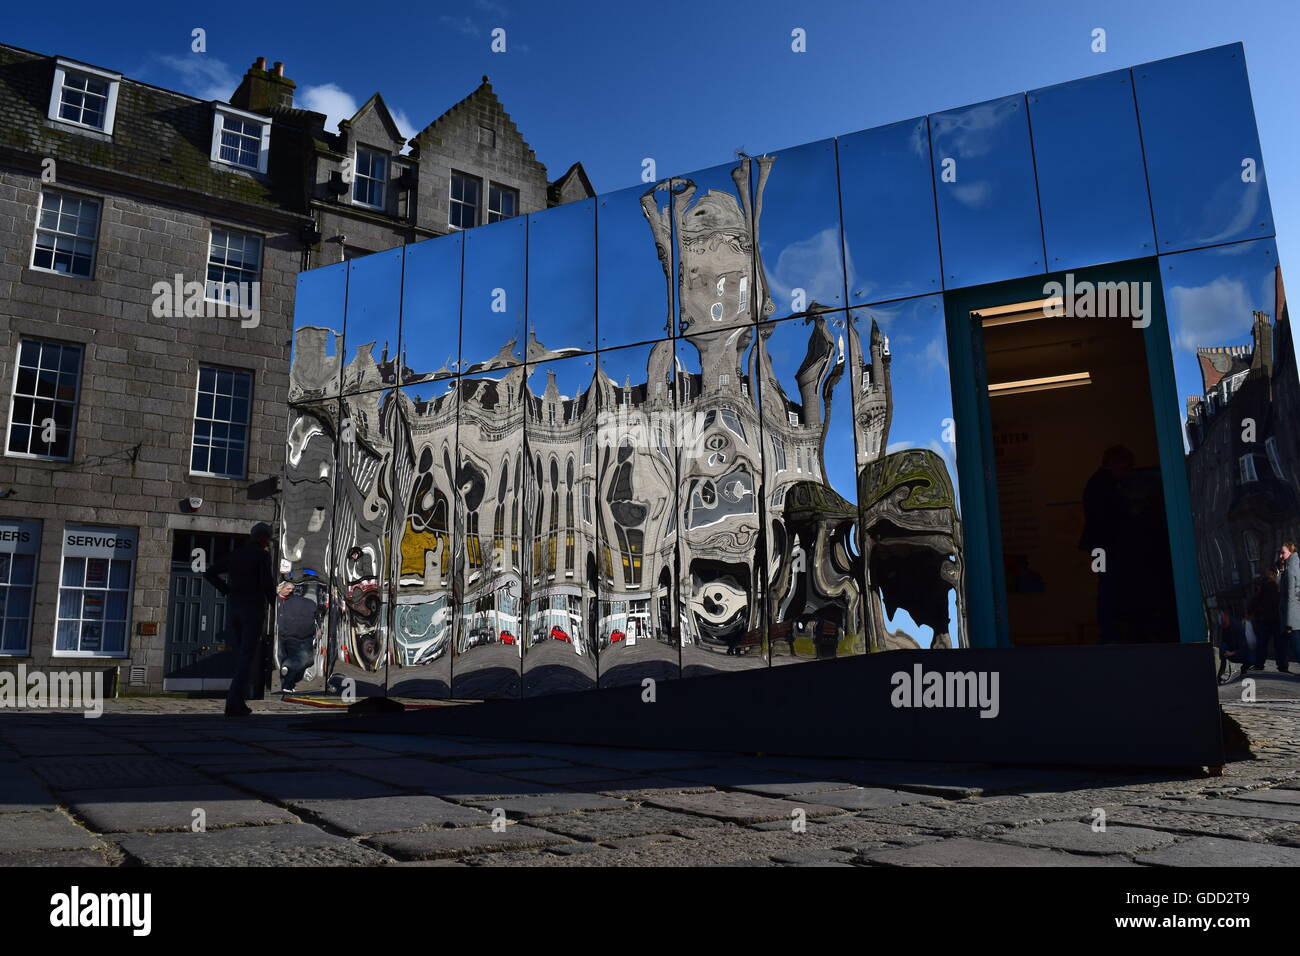 Pabellón reflejado Castlegate Aberdeen. Parte de la apariencia de nuevo festival, un festival de arte visual y diseño en abril/mayo de 2016. Foto de stock